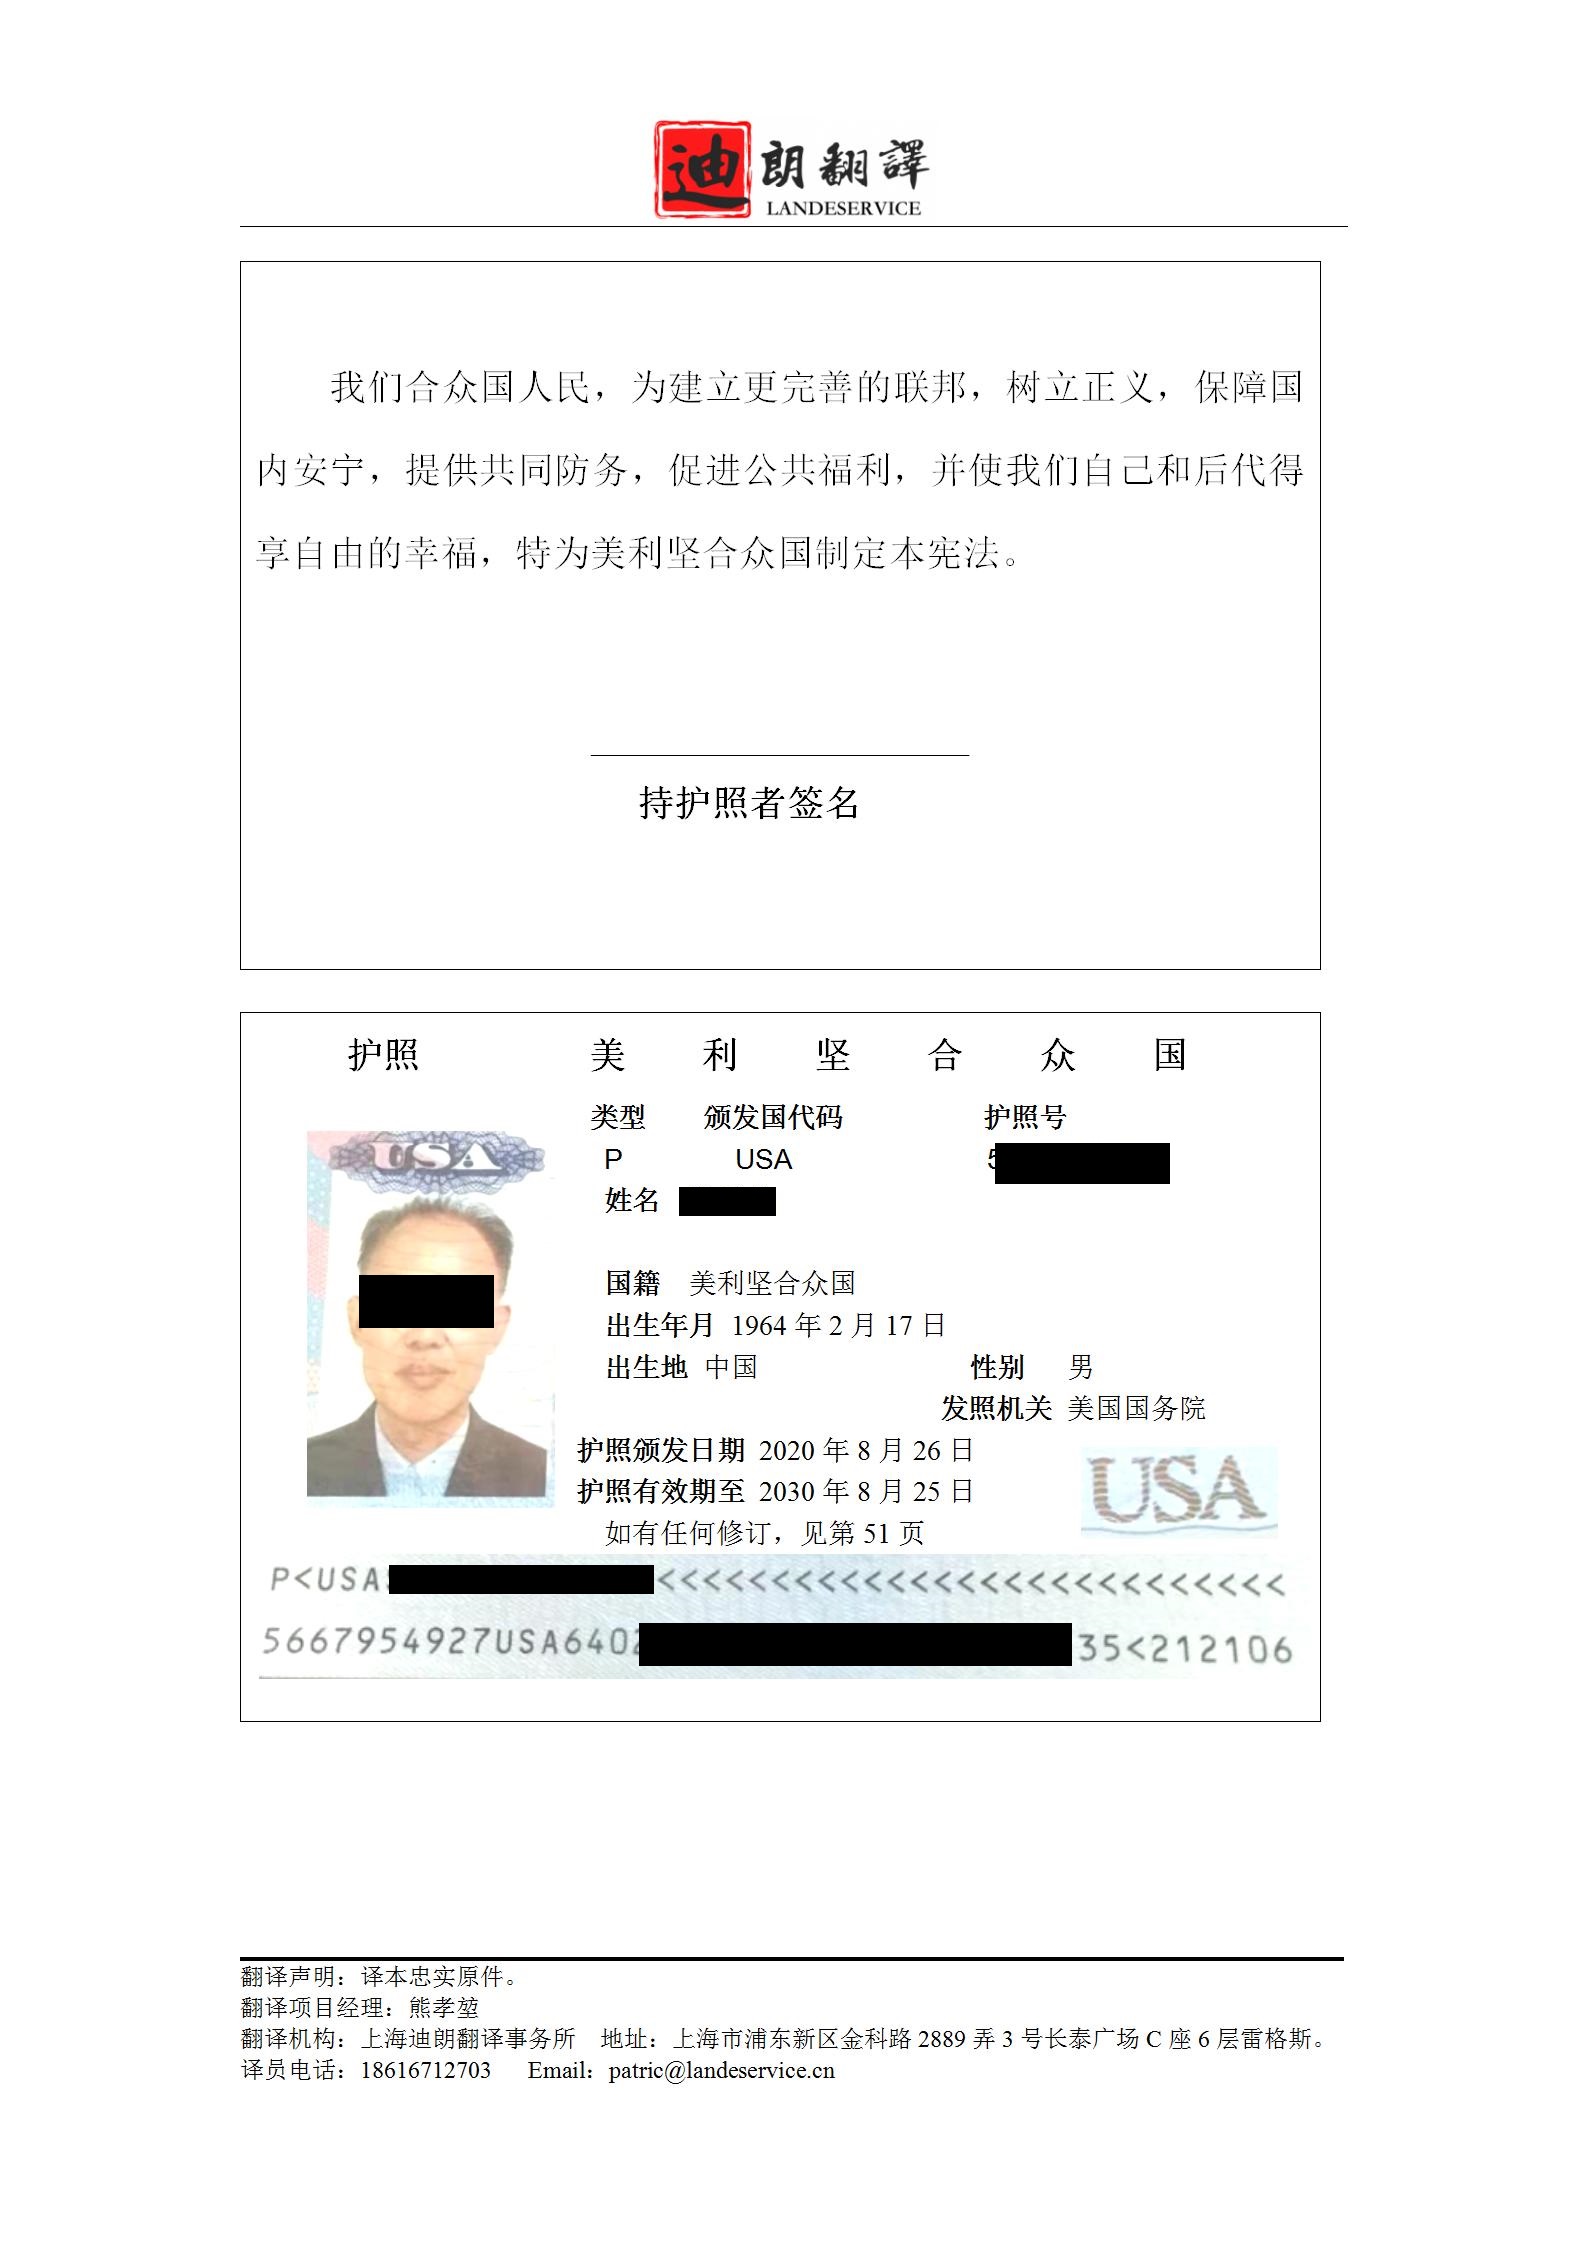 美国护照翻译件shi 01 - 华裔美国护照翻译认证盖章